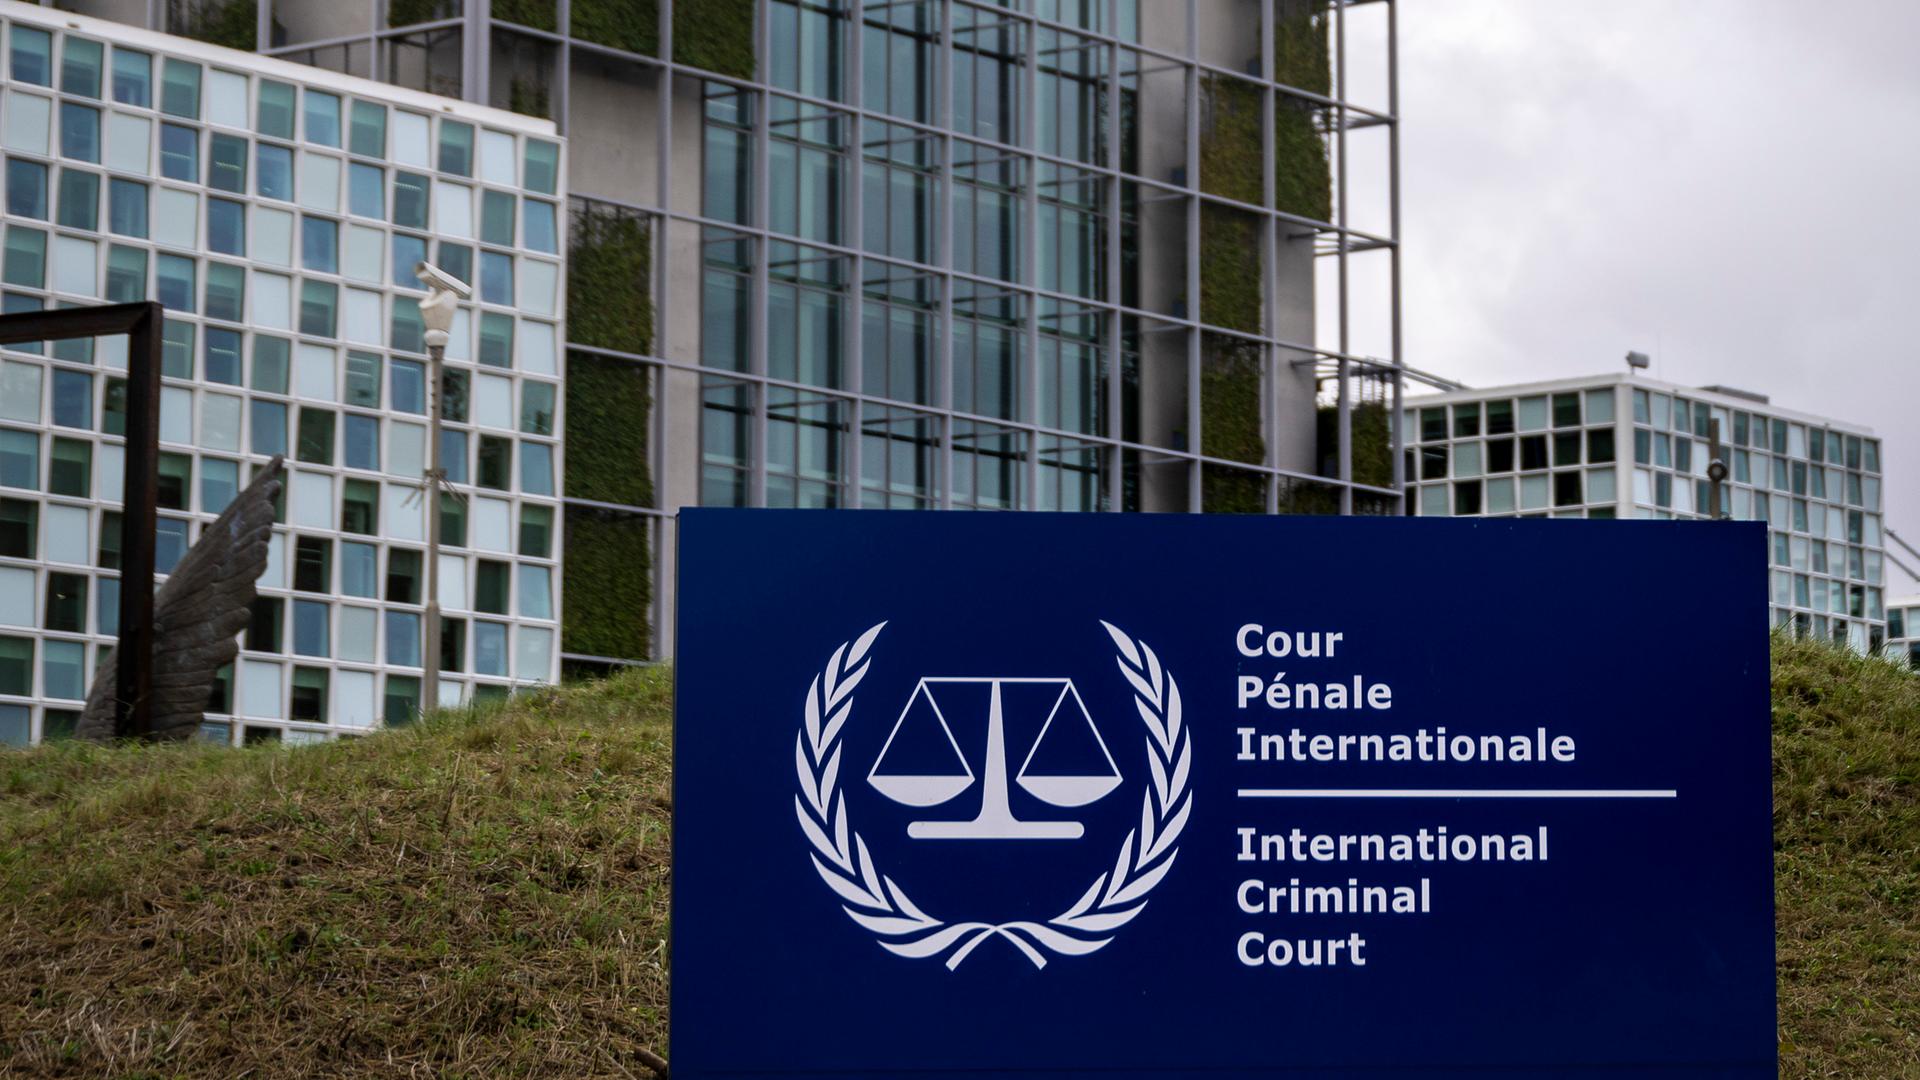 Der Sitz des Internationalen Strafgerichtshofs (IStGH) im Stadtteil Scheveningen von Den Haag (Niederlande). Der IStGH wurde 1998 durch einen völkerrechtlichen Vertrag auf Dauer eingerichtet. Er ist kein Teil der Vereinten Nationen